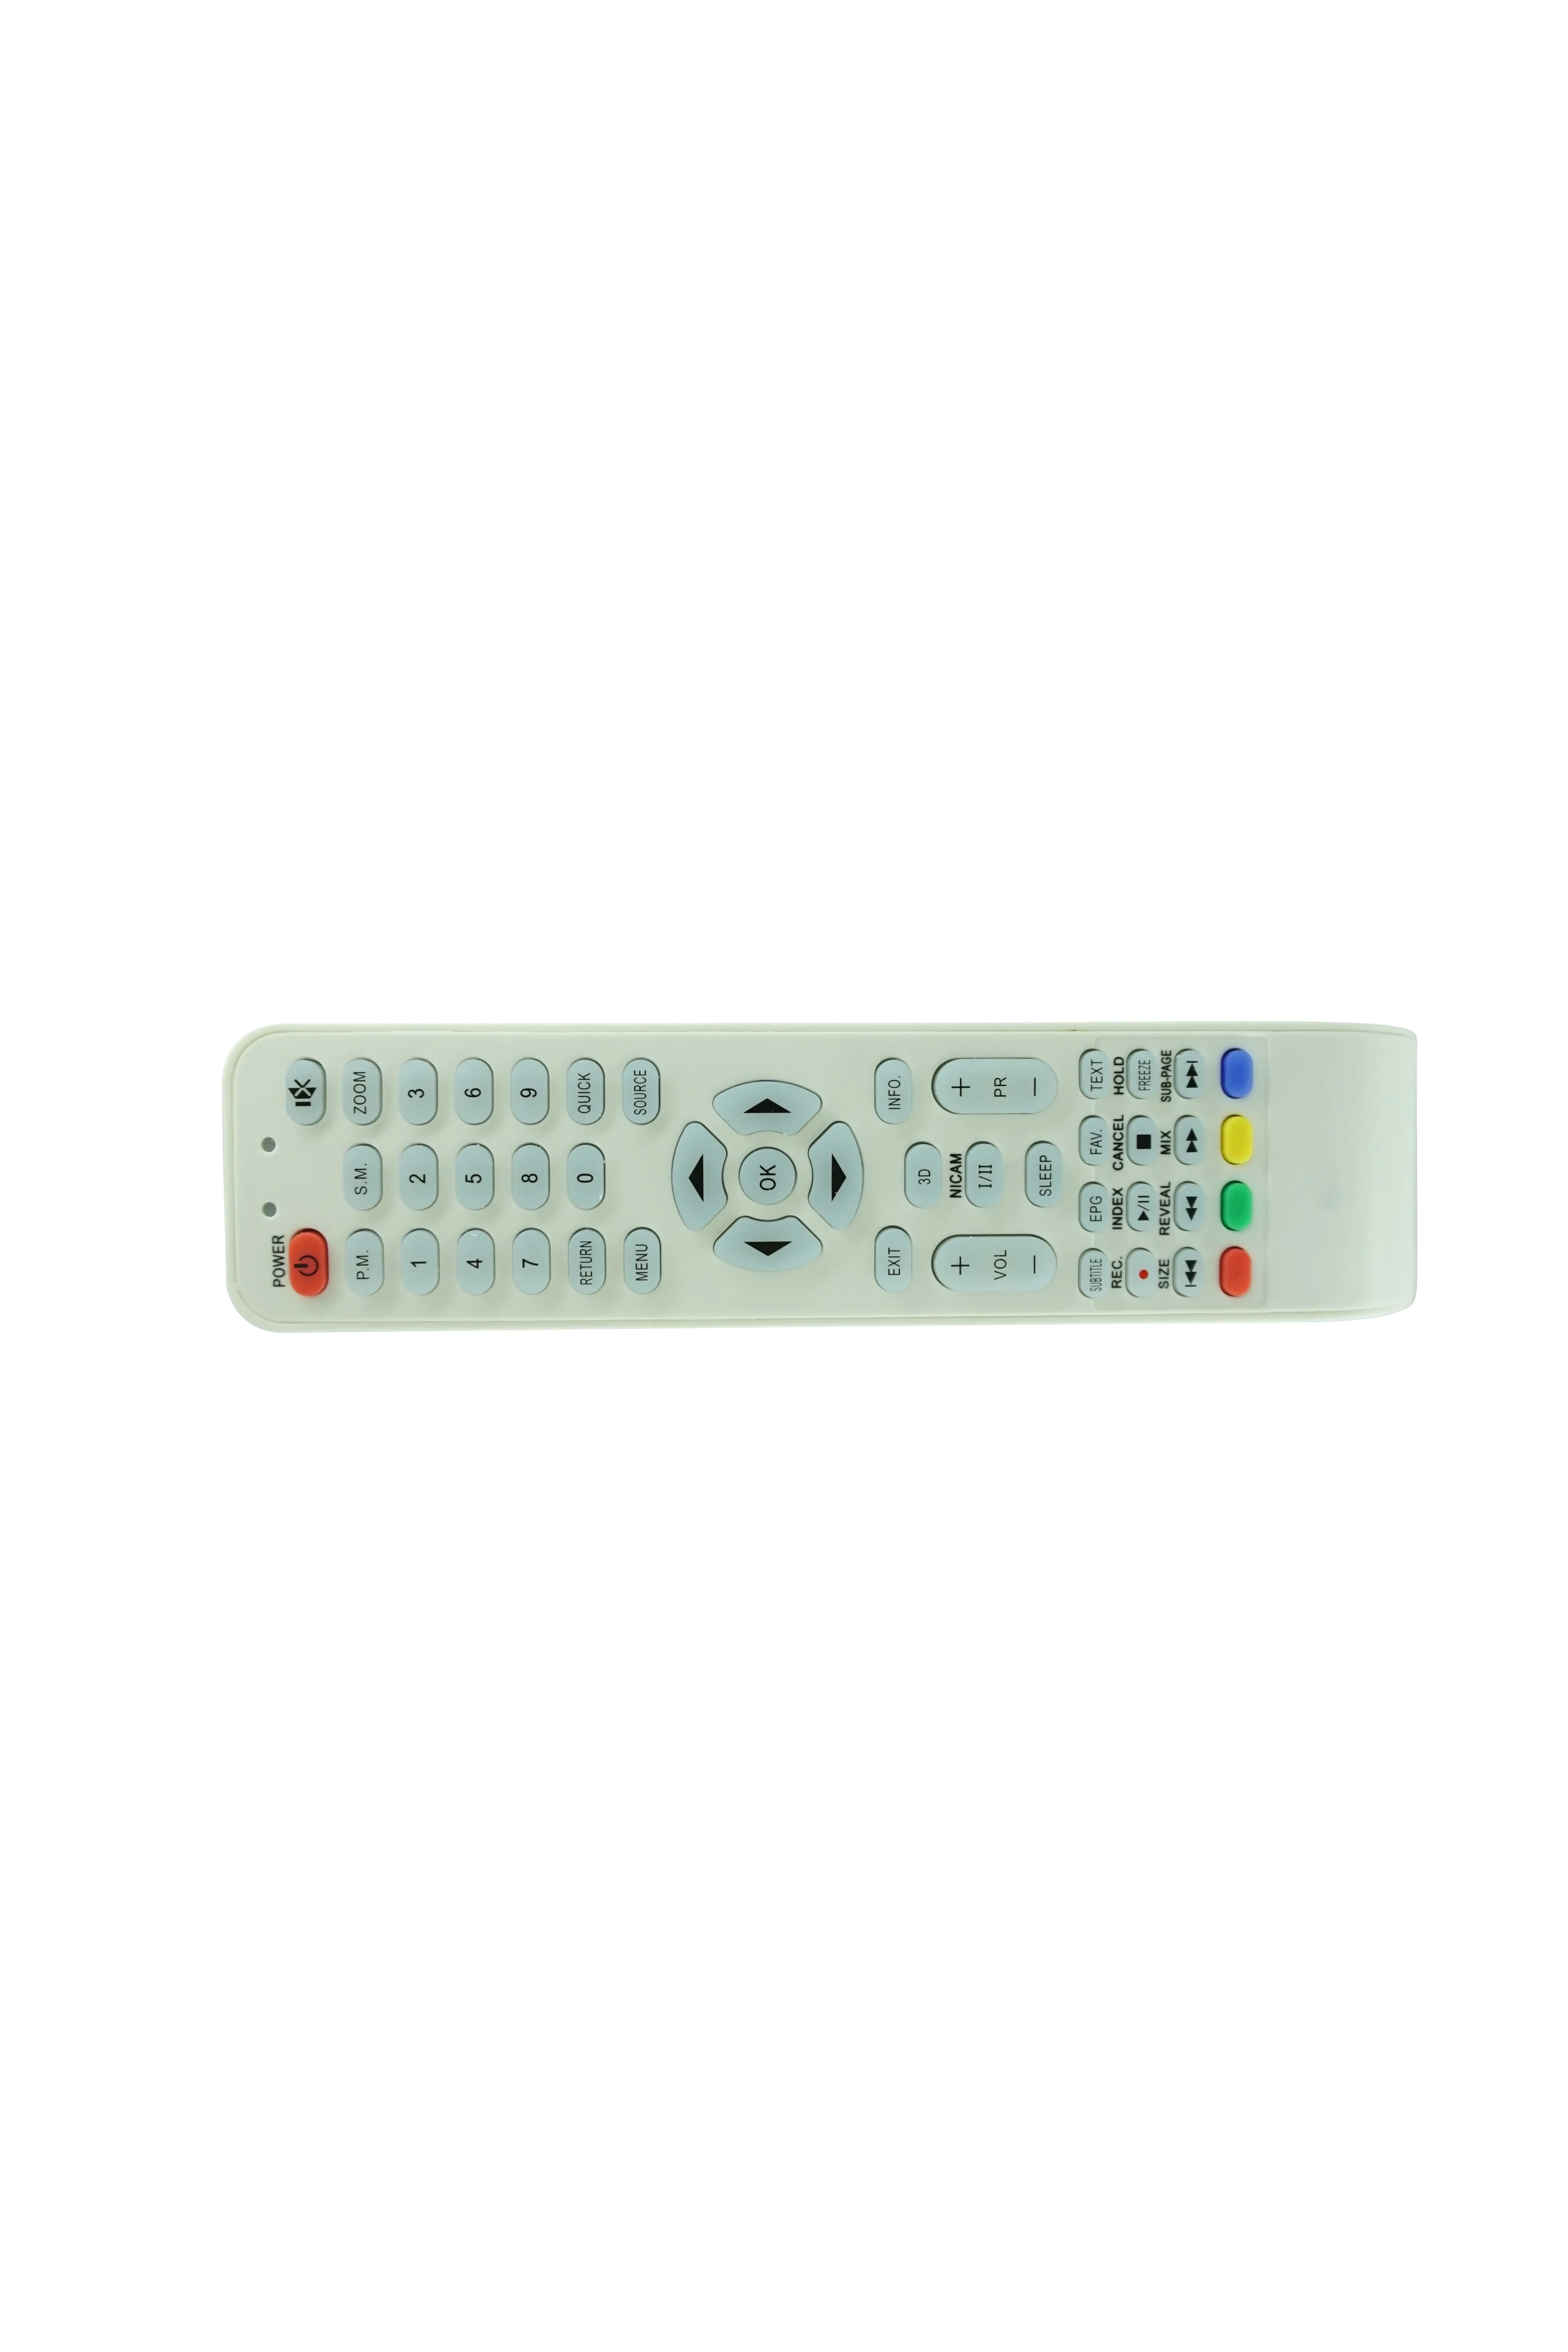 Télécommande pour Horizont 32LE5511DR 32LE5571DR Smart LED LCD TV HDTV